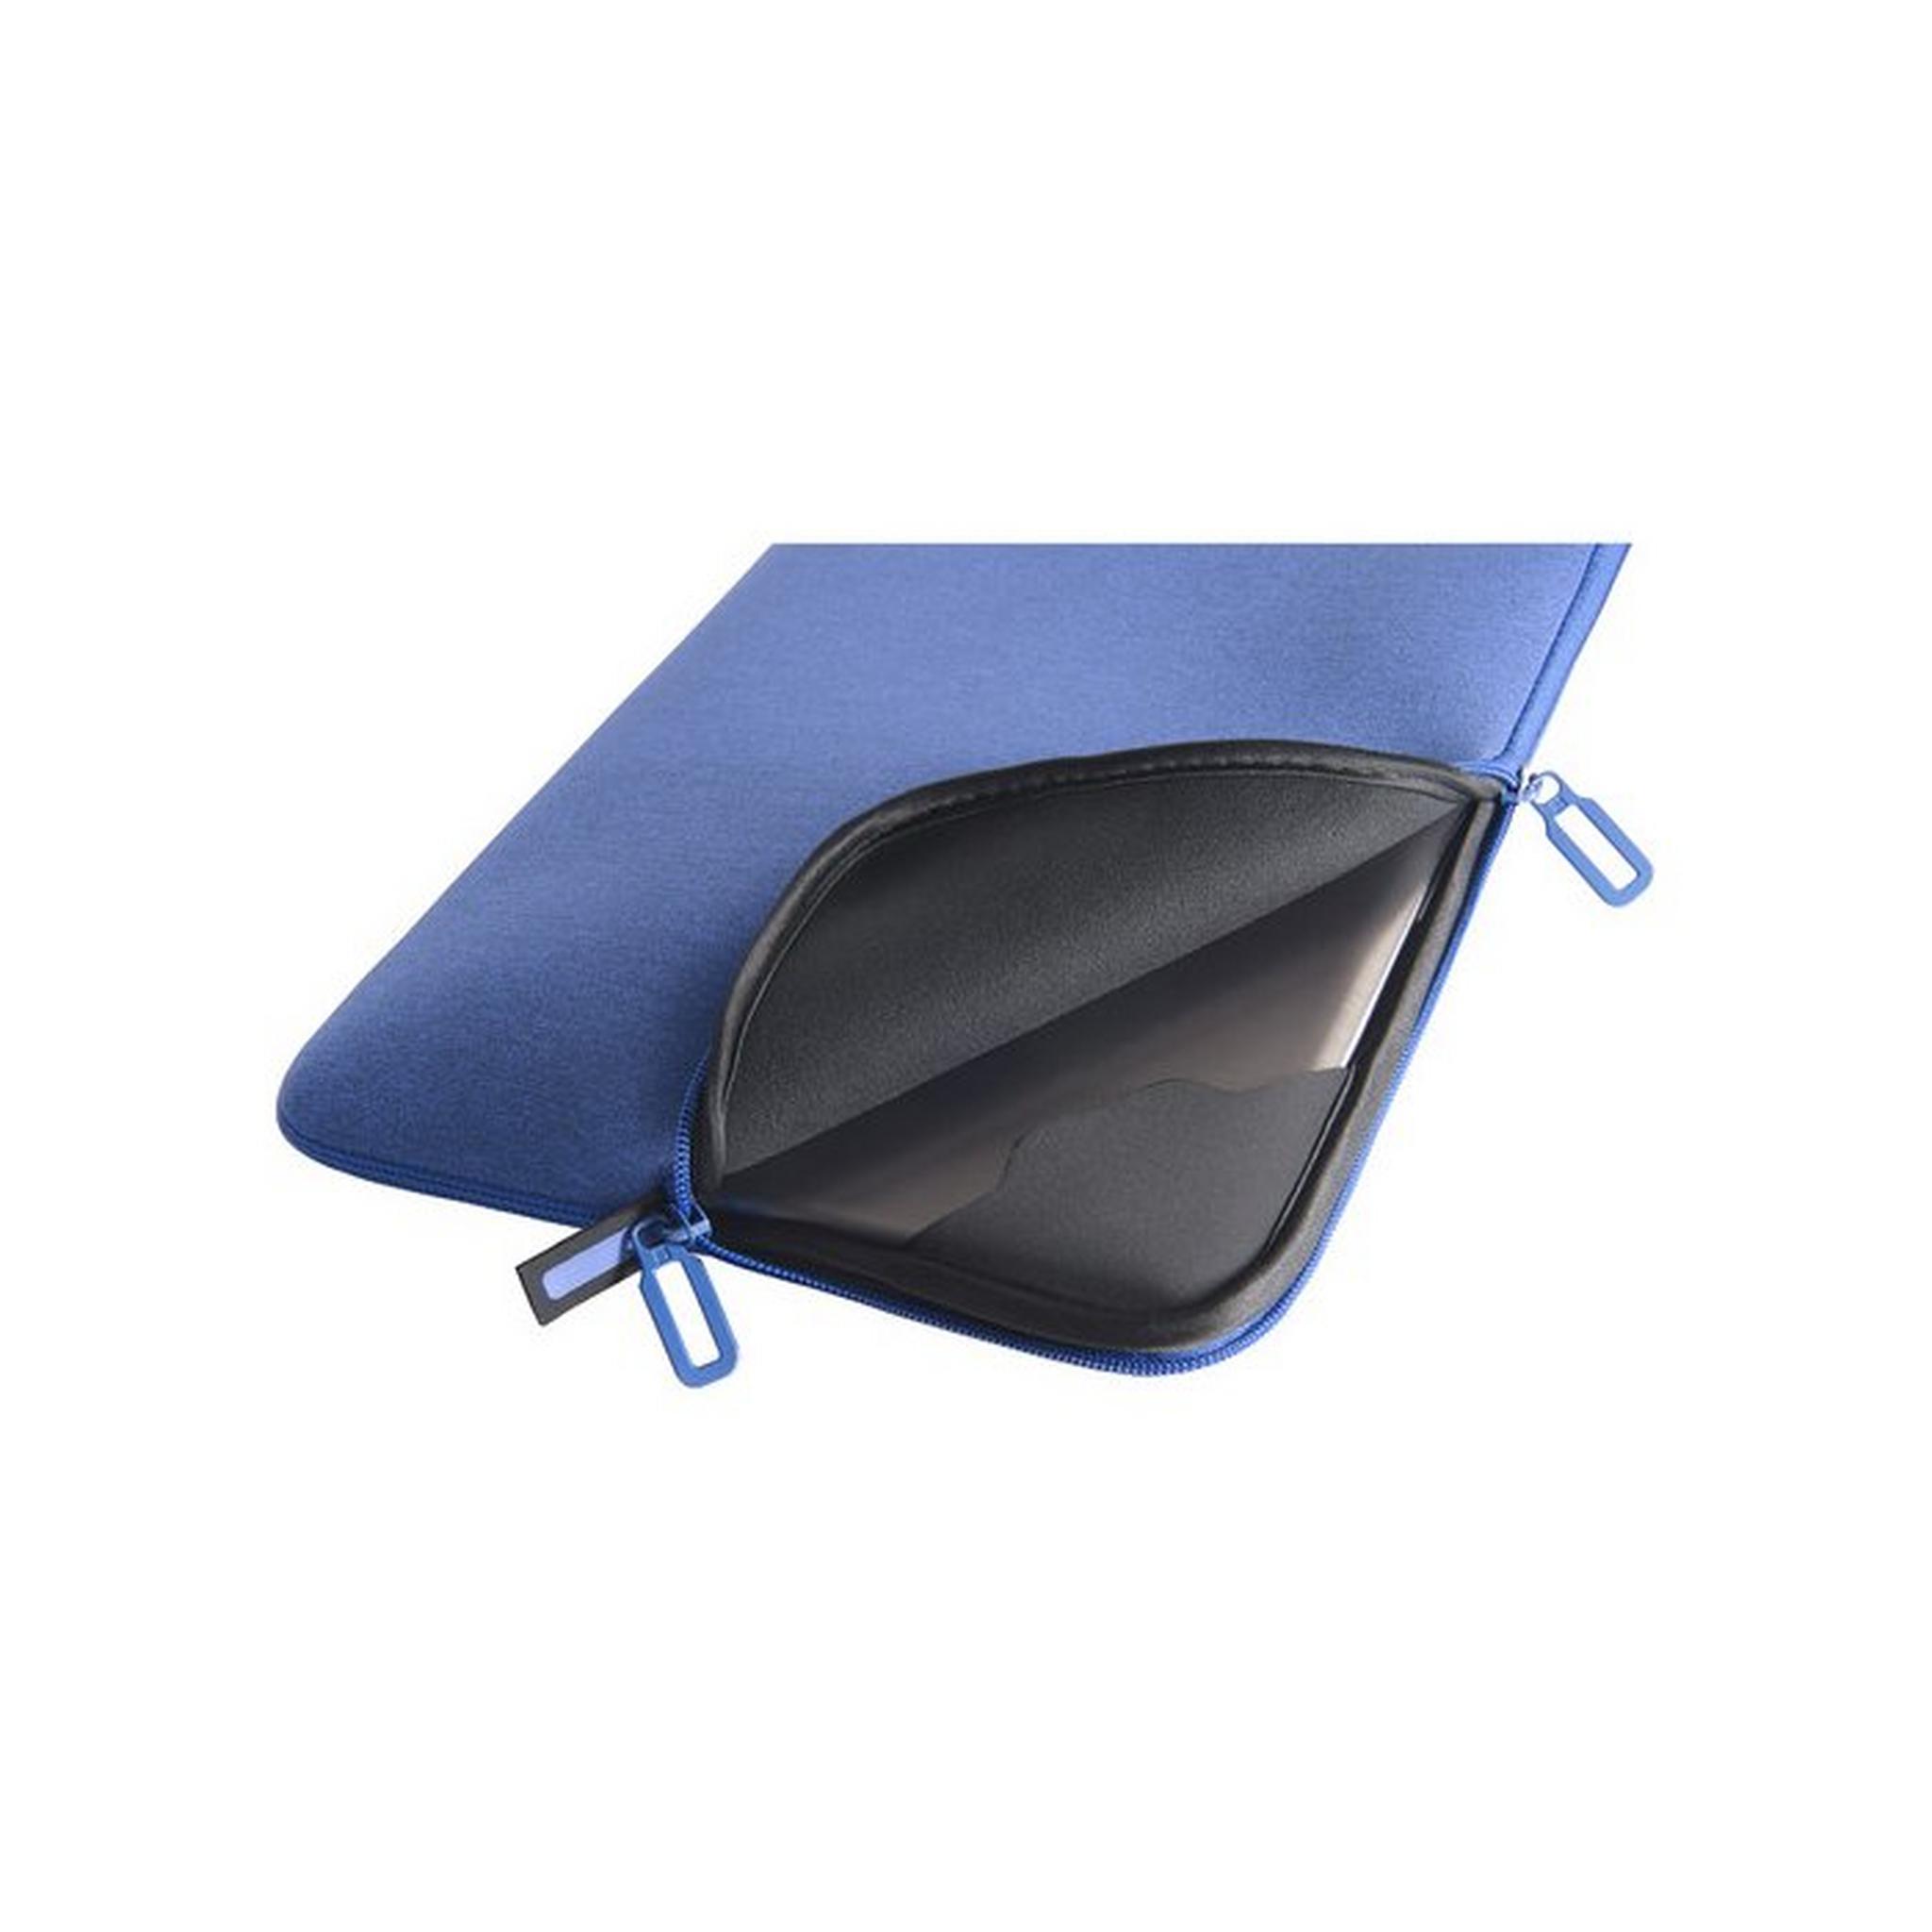 Tucano Melange Second Skin Sleeve for 13-14 Inch Laptops, BFM1314-B– Blue